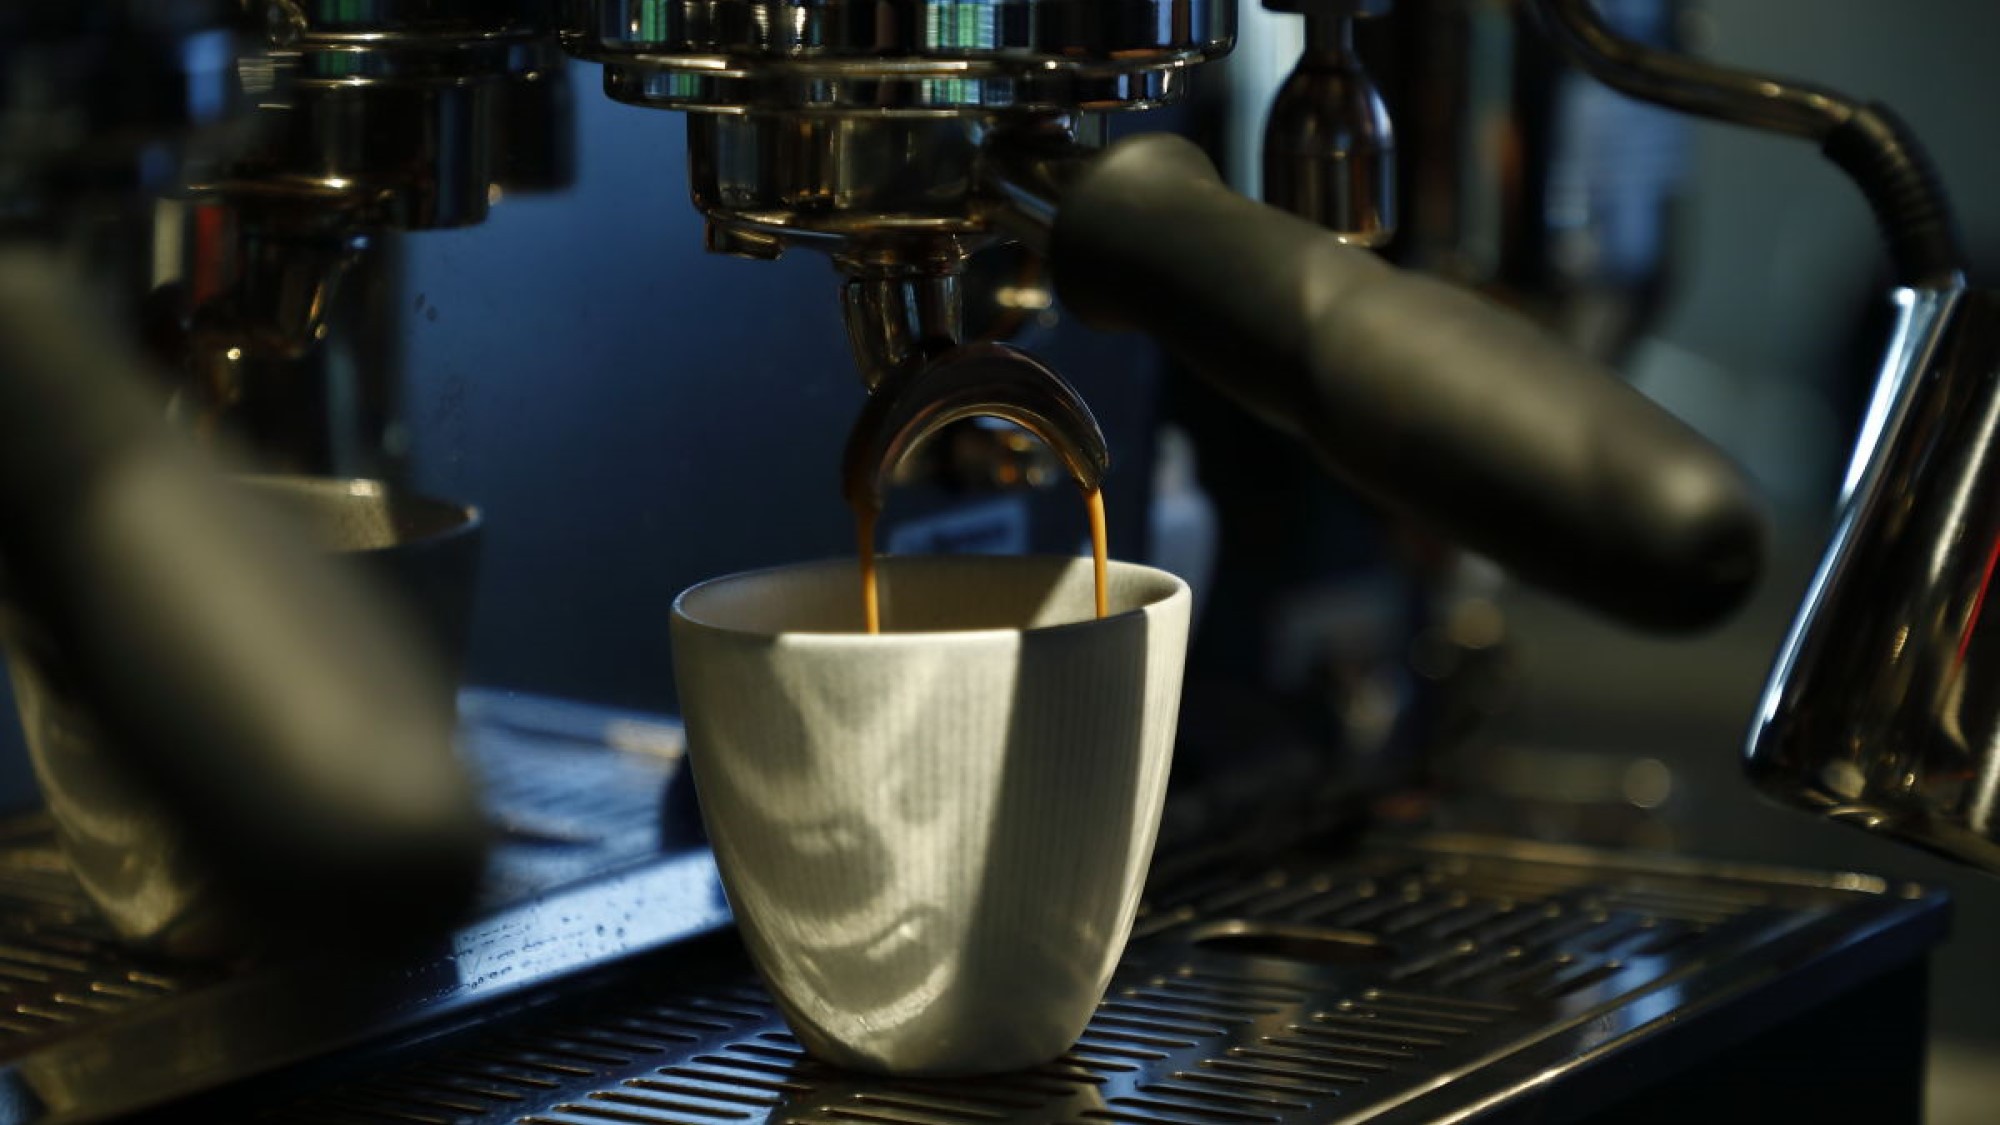 Allpress Espresso coffee